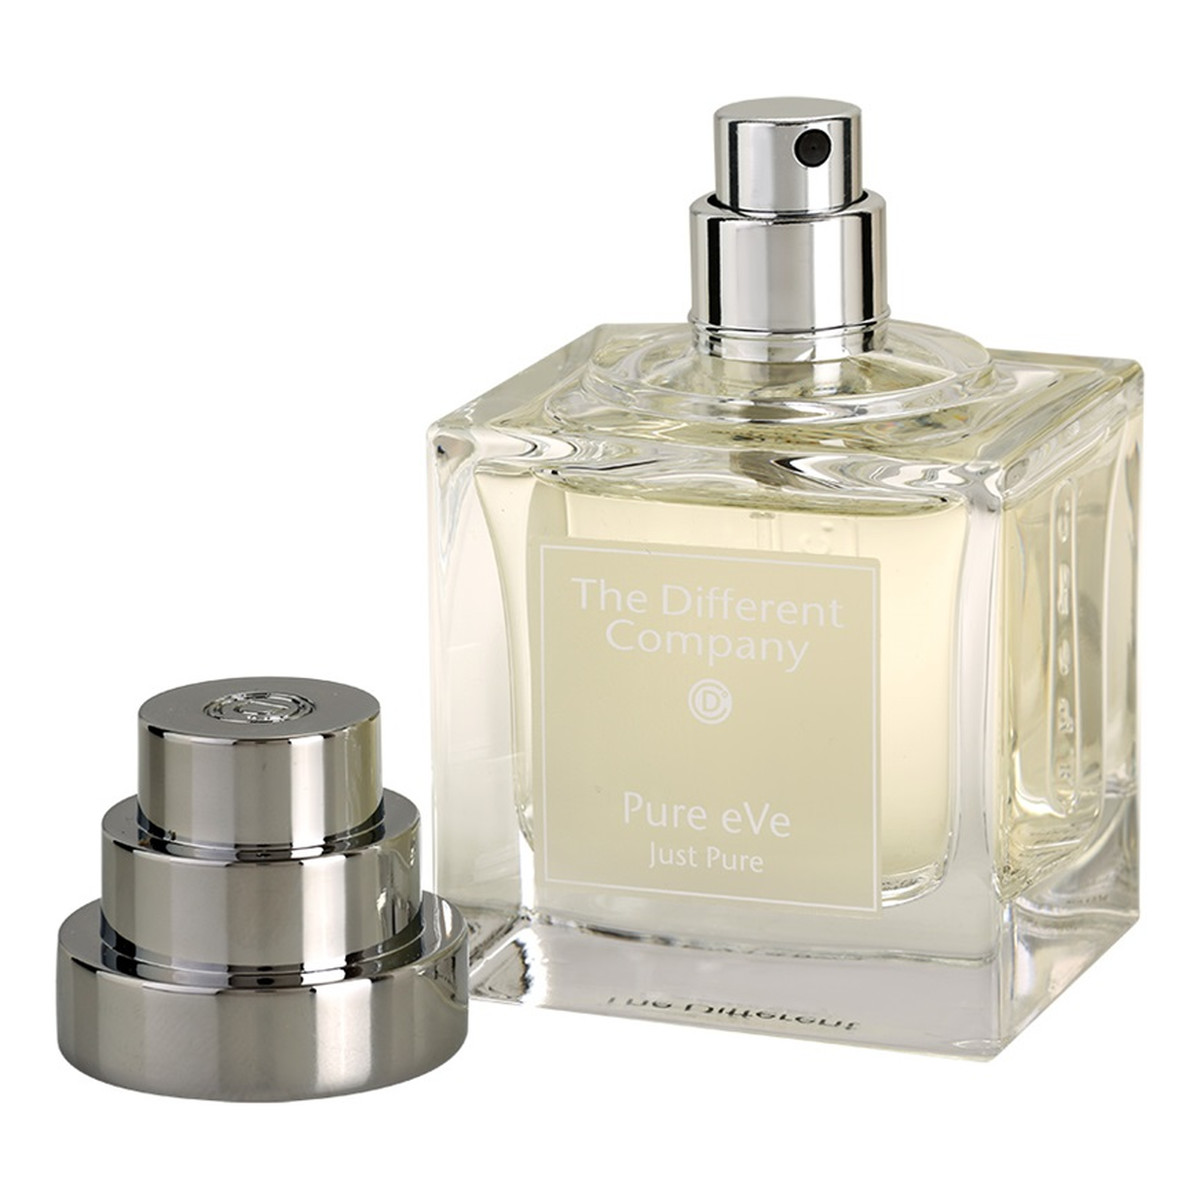 The Different Company Pure eVe woda perfumowana dla kobiet napełnialny 50ml